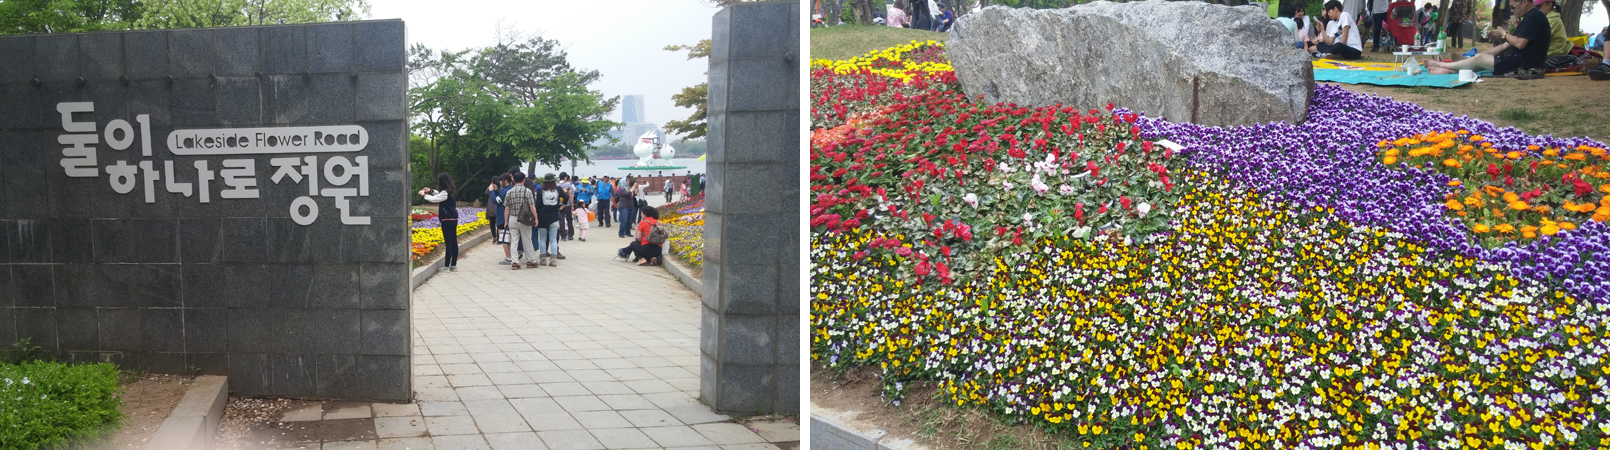 둘이 하나로 정원 입구(왼쪽), ‘둘이 하나로 정원’ 길 옆에 장식해놓은 꽃들(오른쪽)